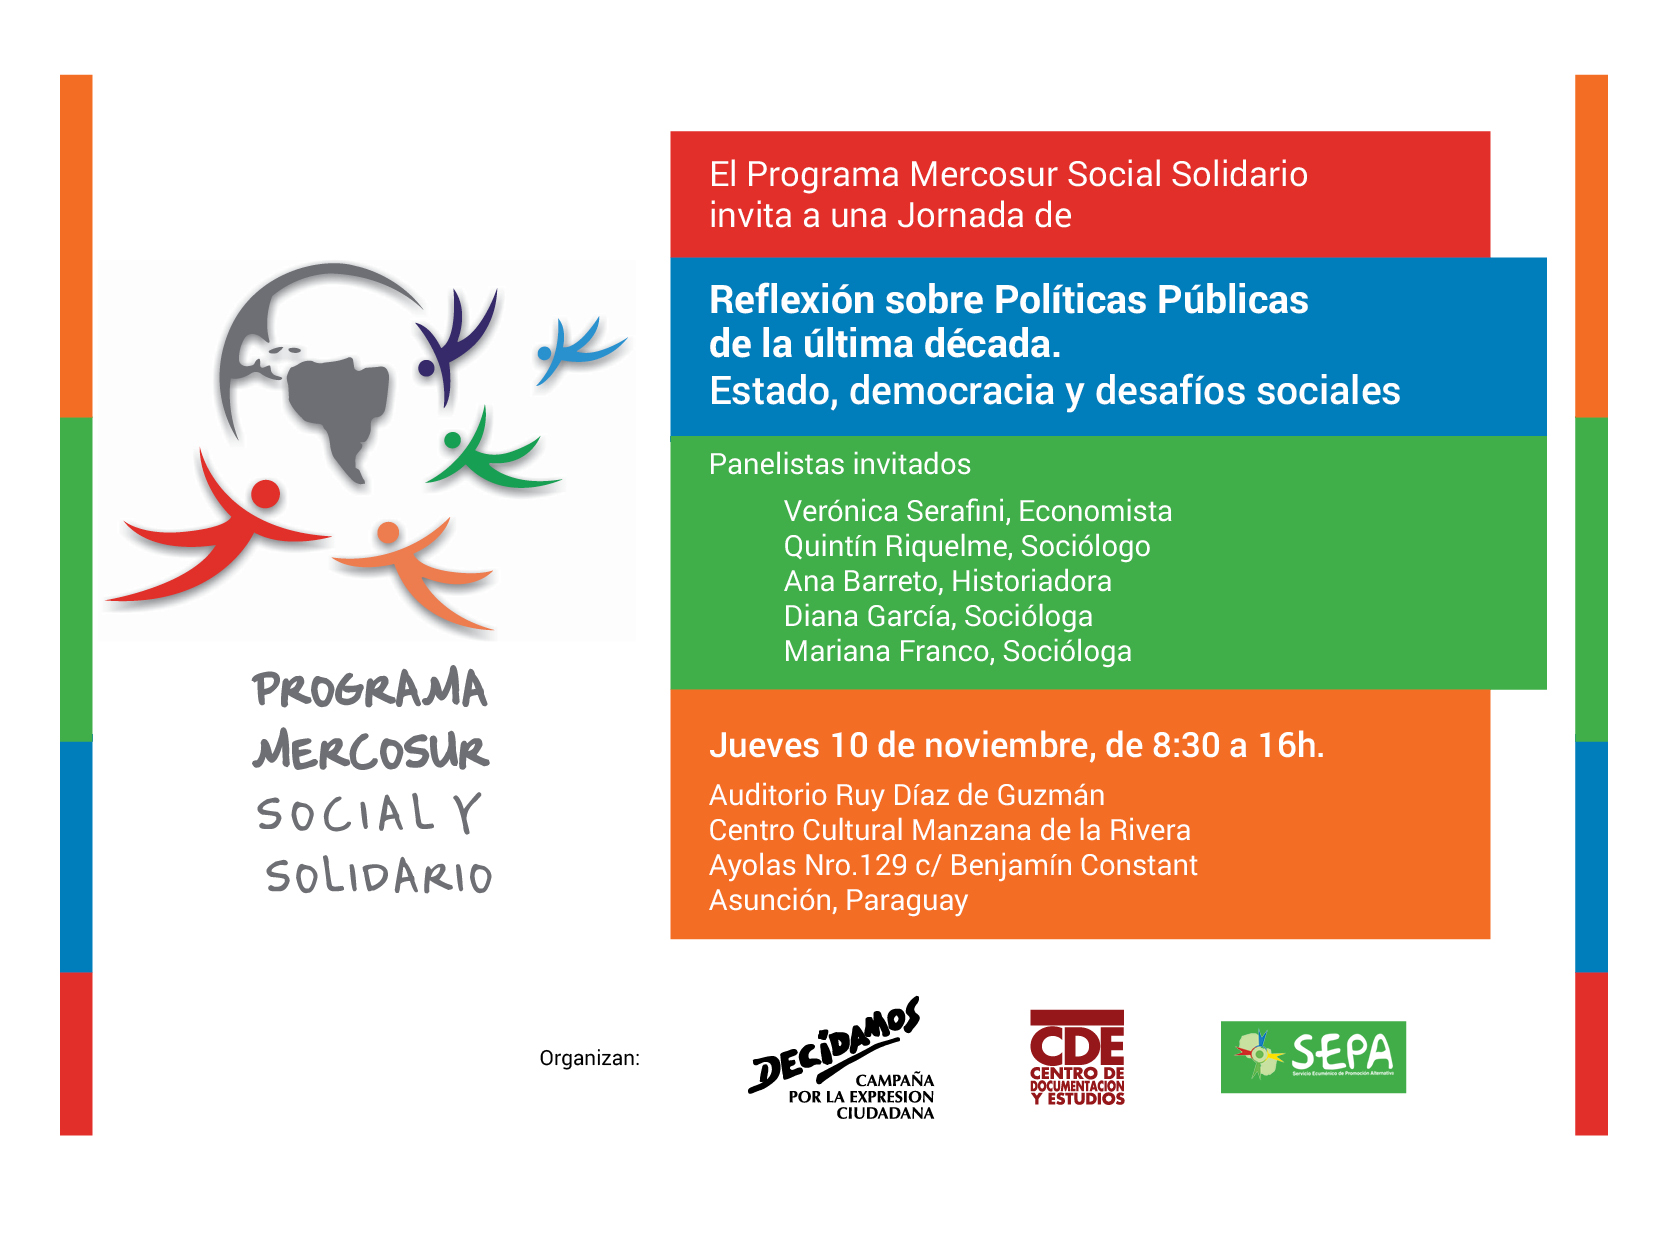 PARAGUAY. Jornada de Reflexión sobre políticas públicas de la última década. Estado, democracia y desafíos sociales